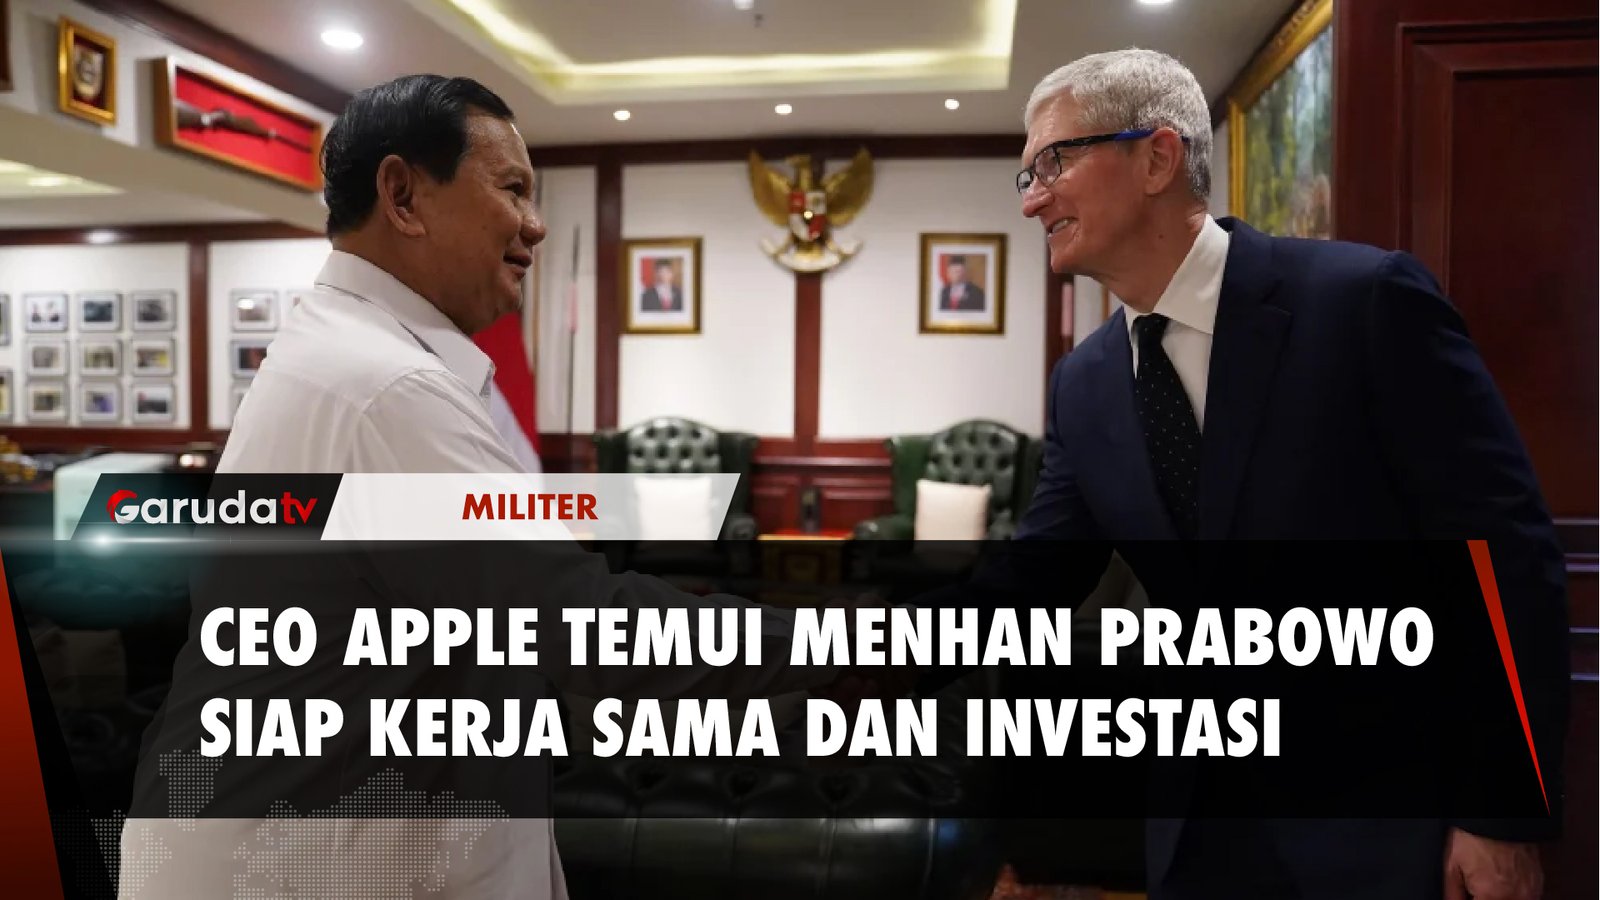 Menhan Prabowo Terima Kunjungan CEO Apple di Kantor Kemenhan, Bahas Apa?